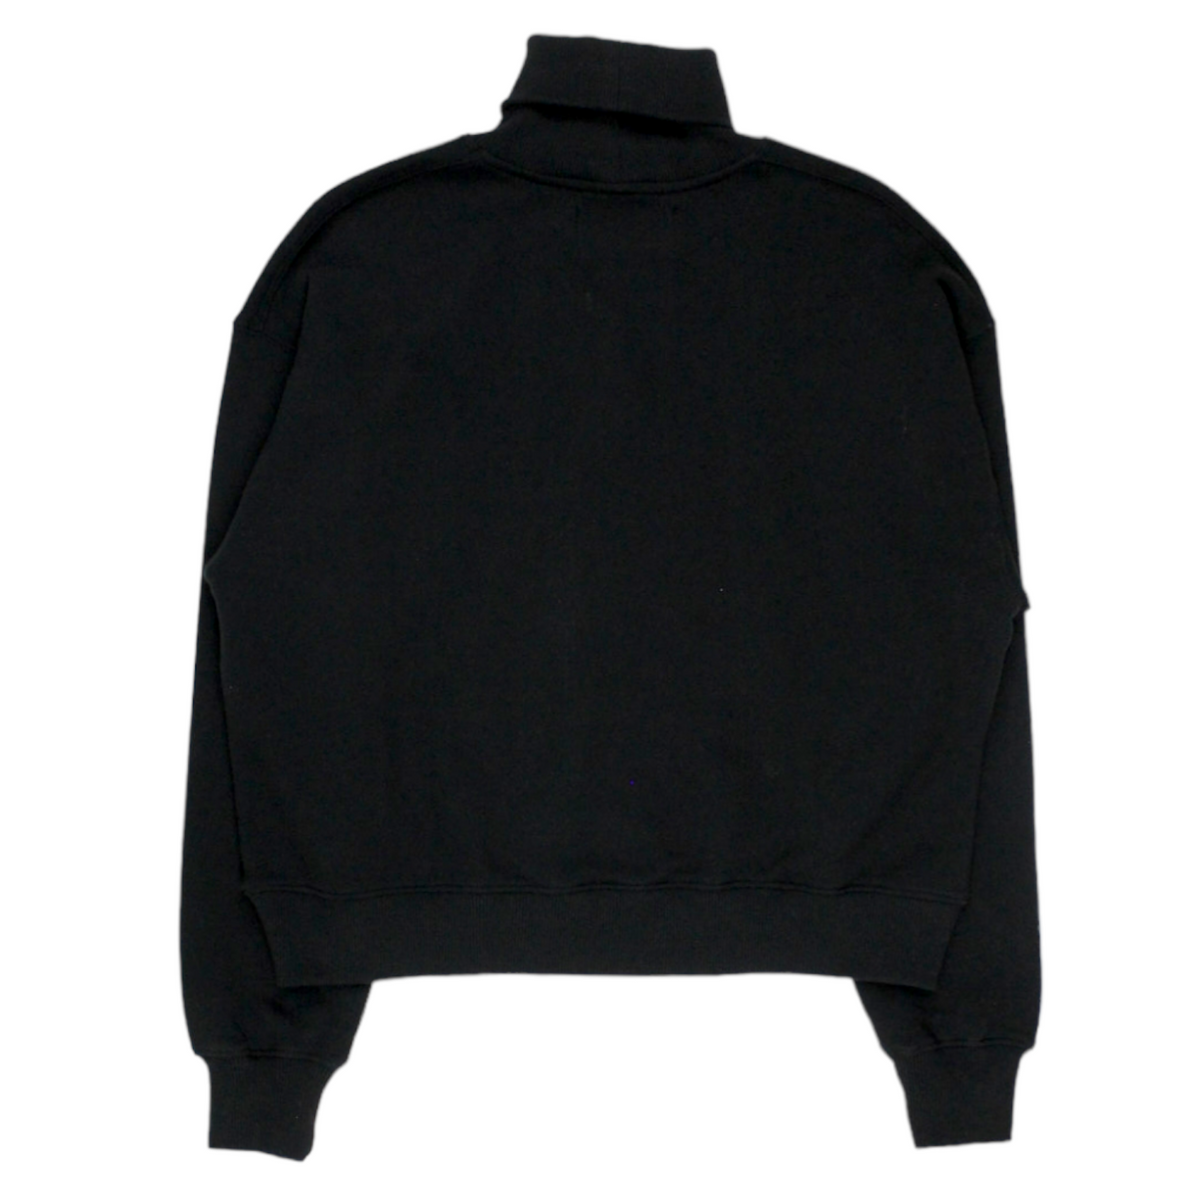 Calvin Klein Black Roll Neck Sweatshirt